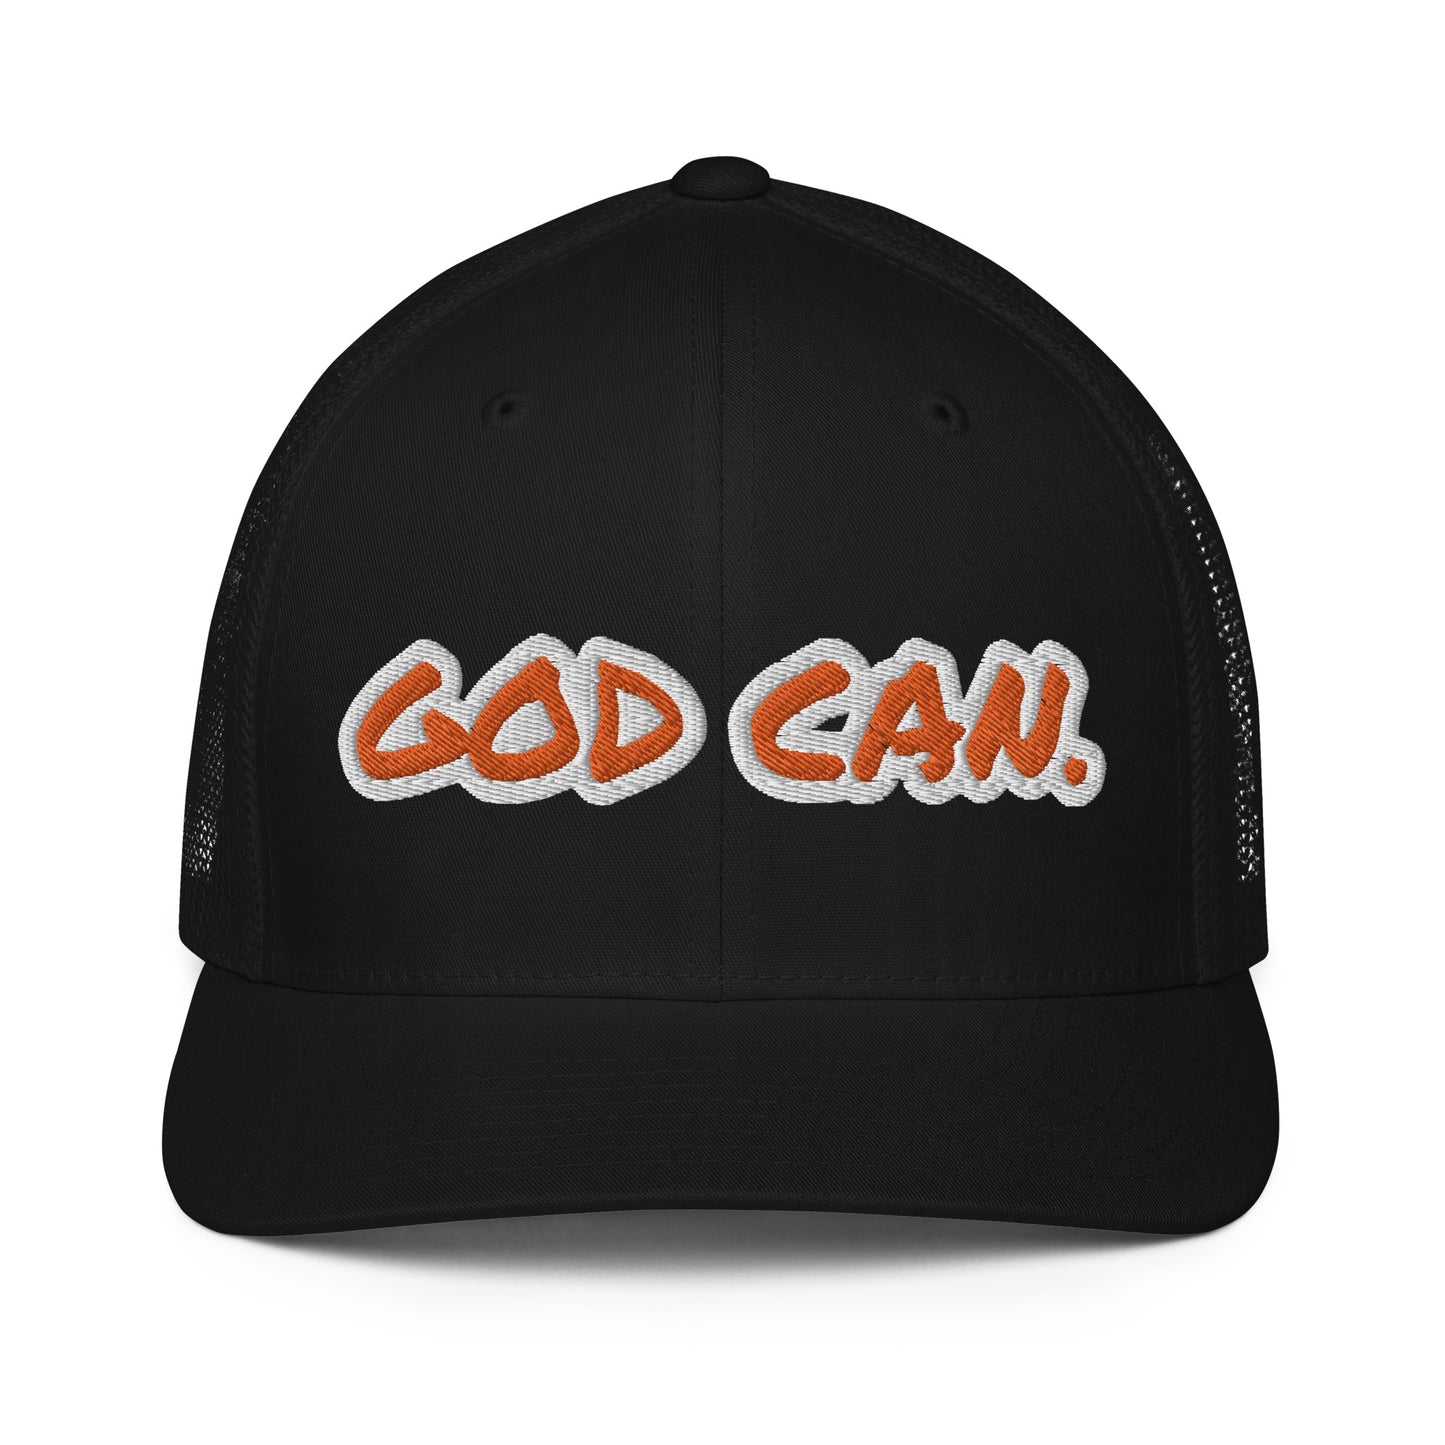 God Can.- Closed-back trucker cap